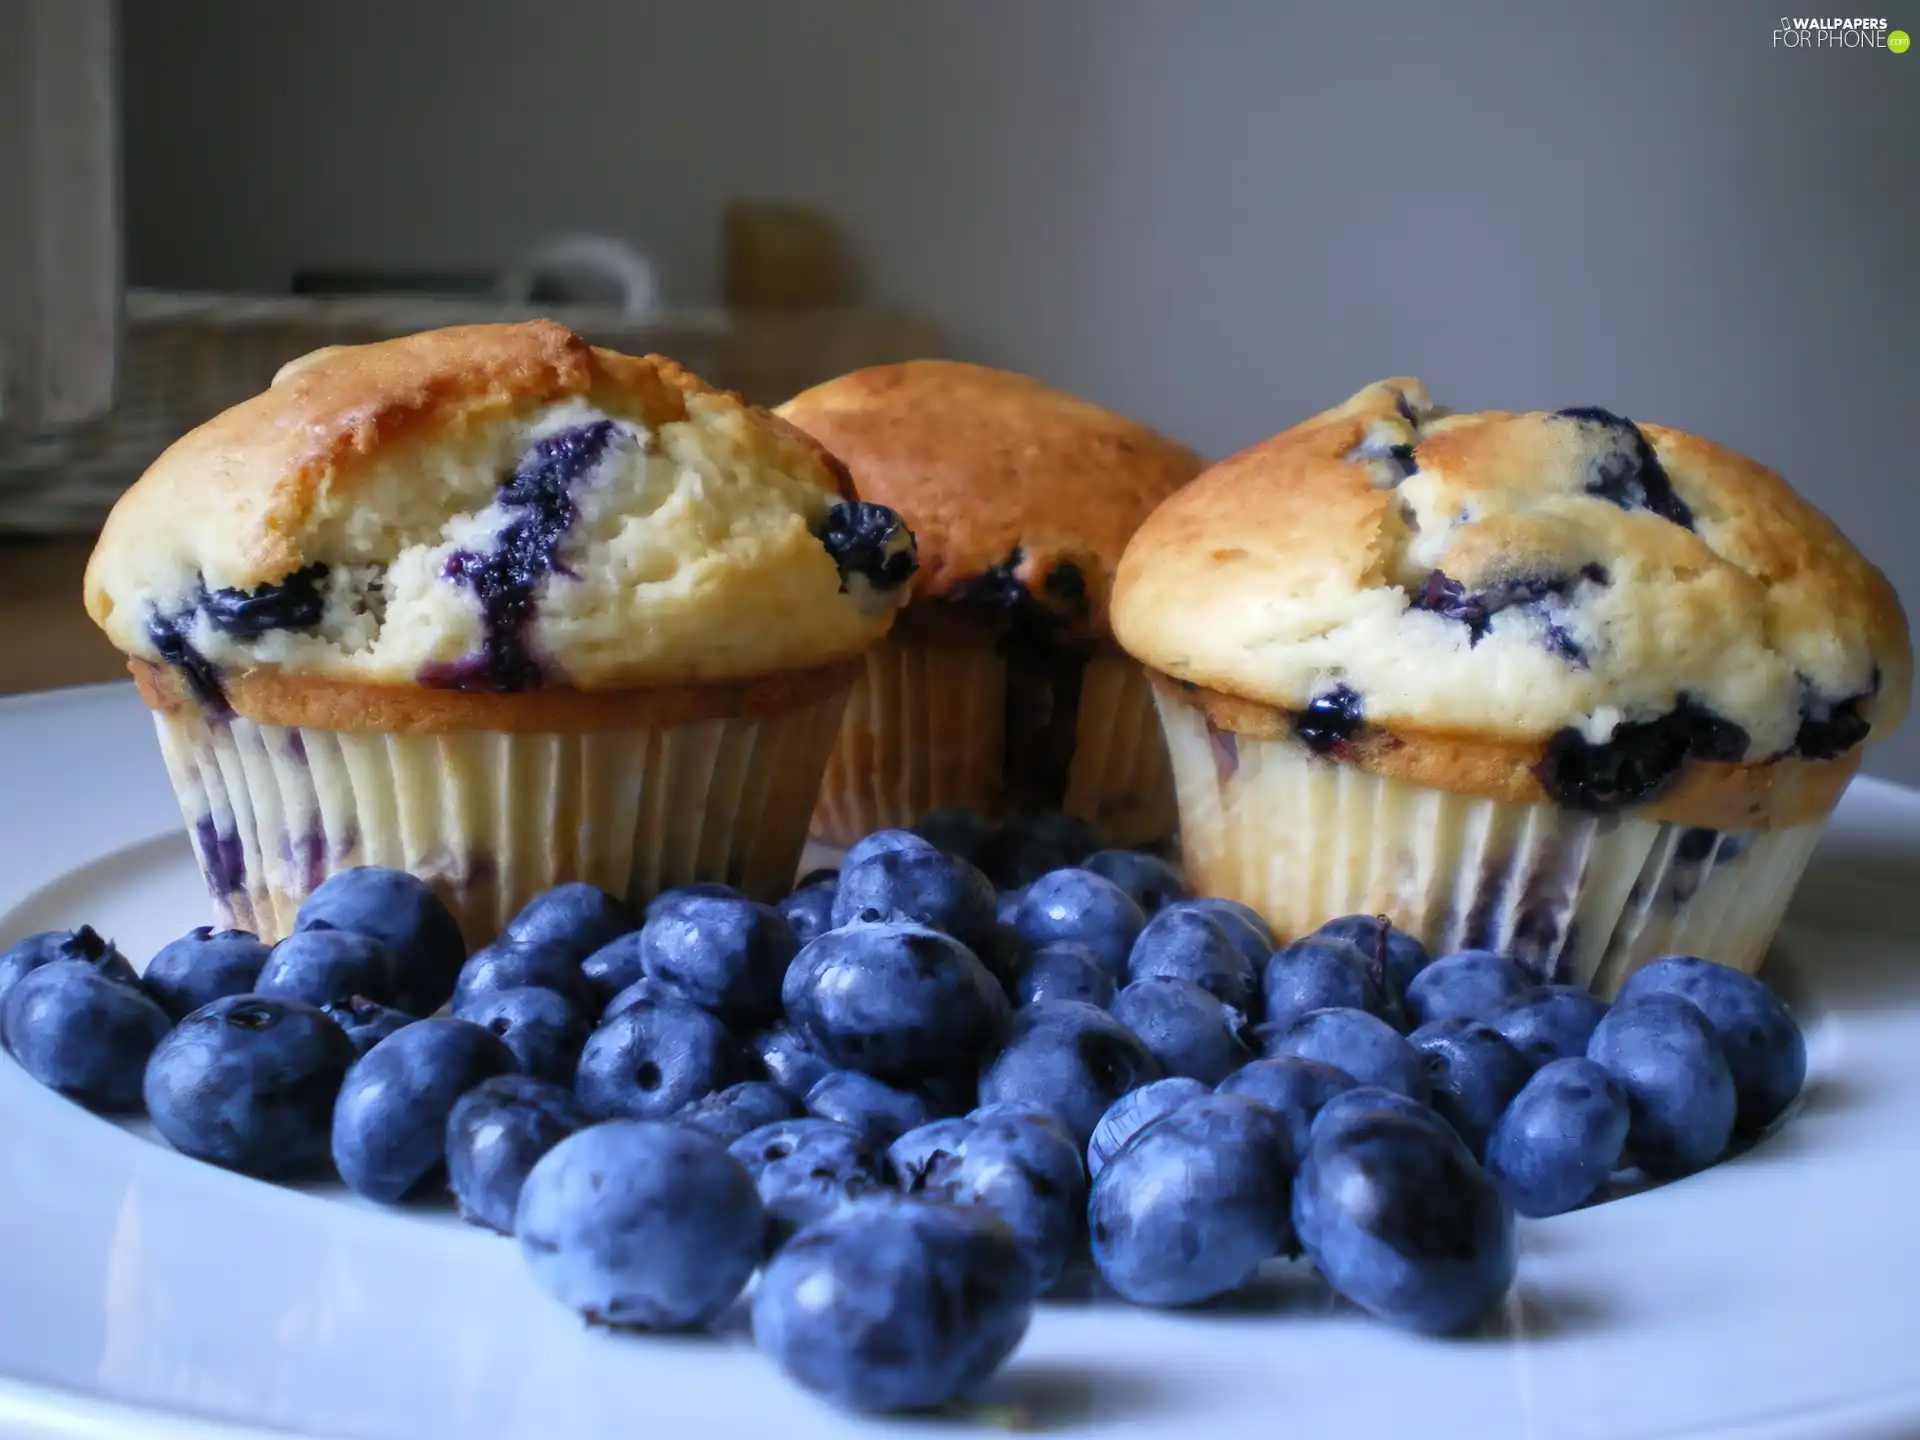 Muffins, blueberries